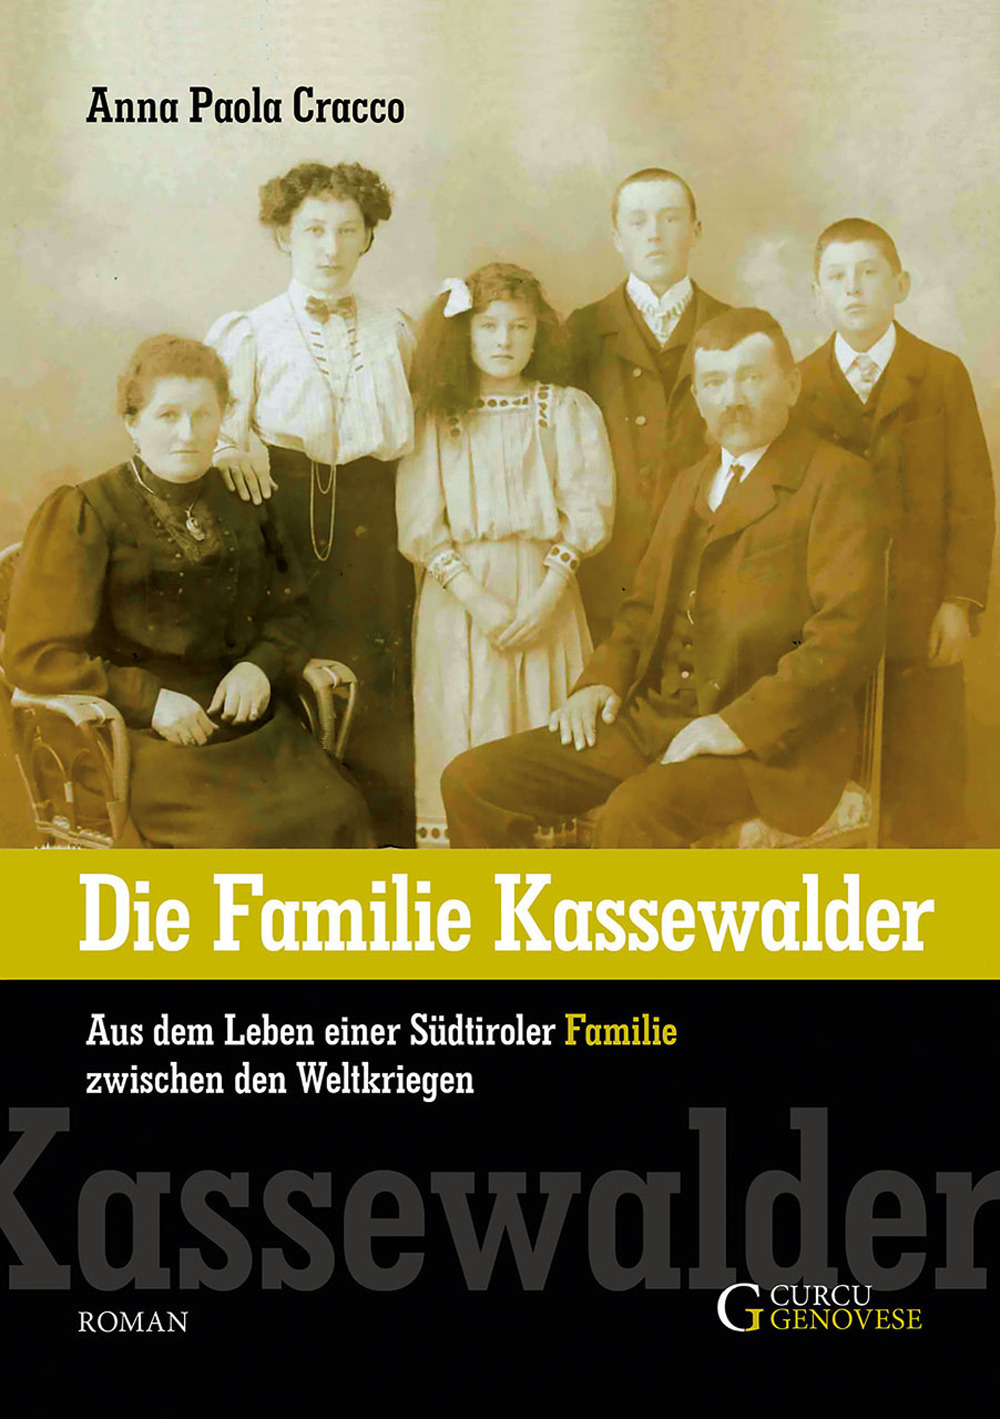 Die familie Kassewalder. Aus dem Leben einer Südtiroler Familie zwischen den Weltkriegen